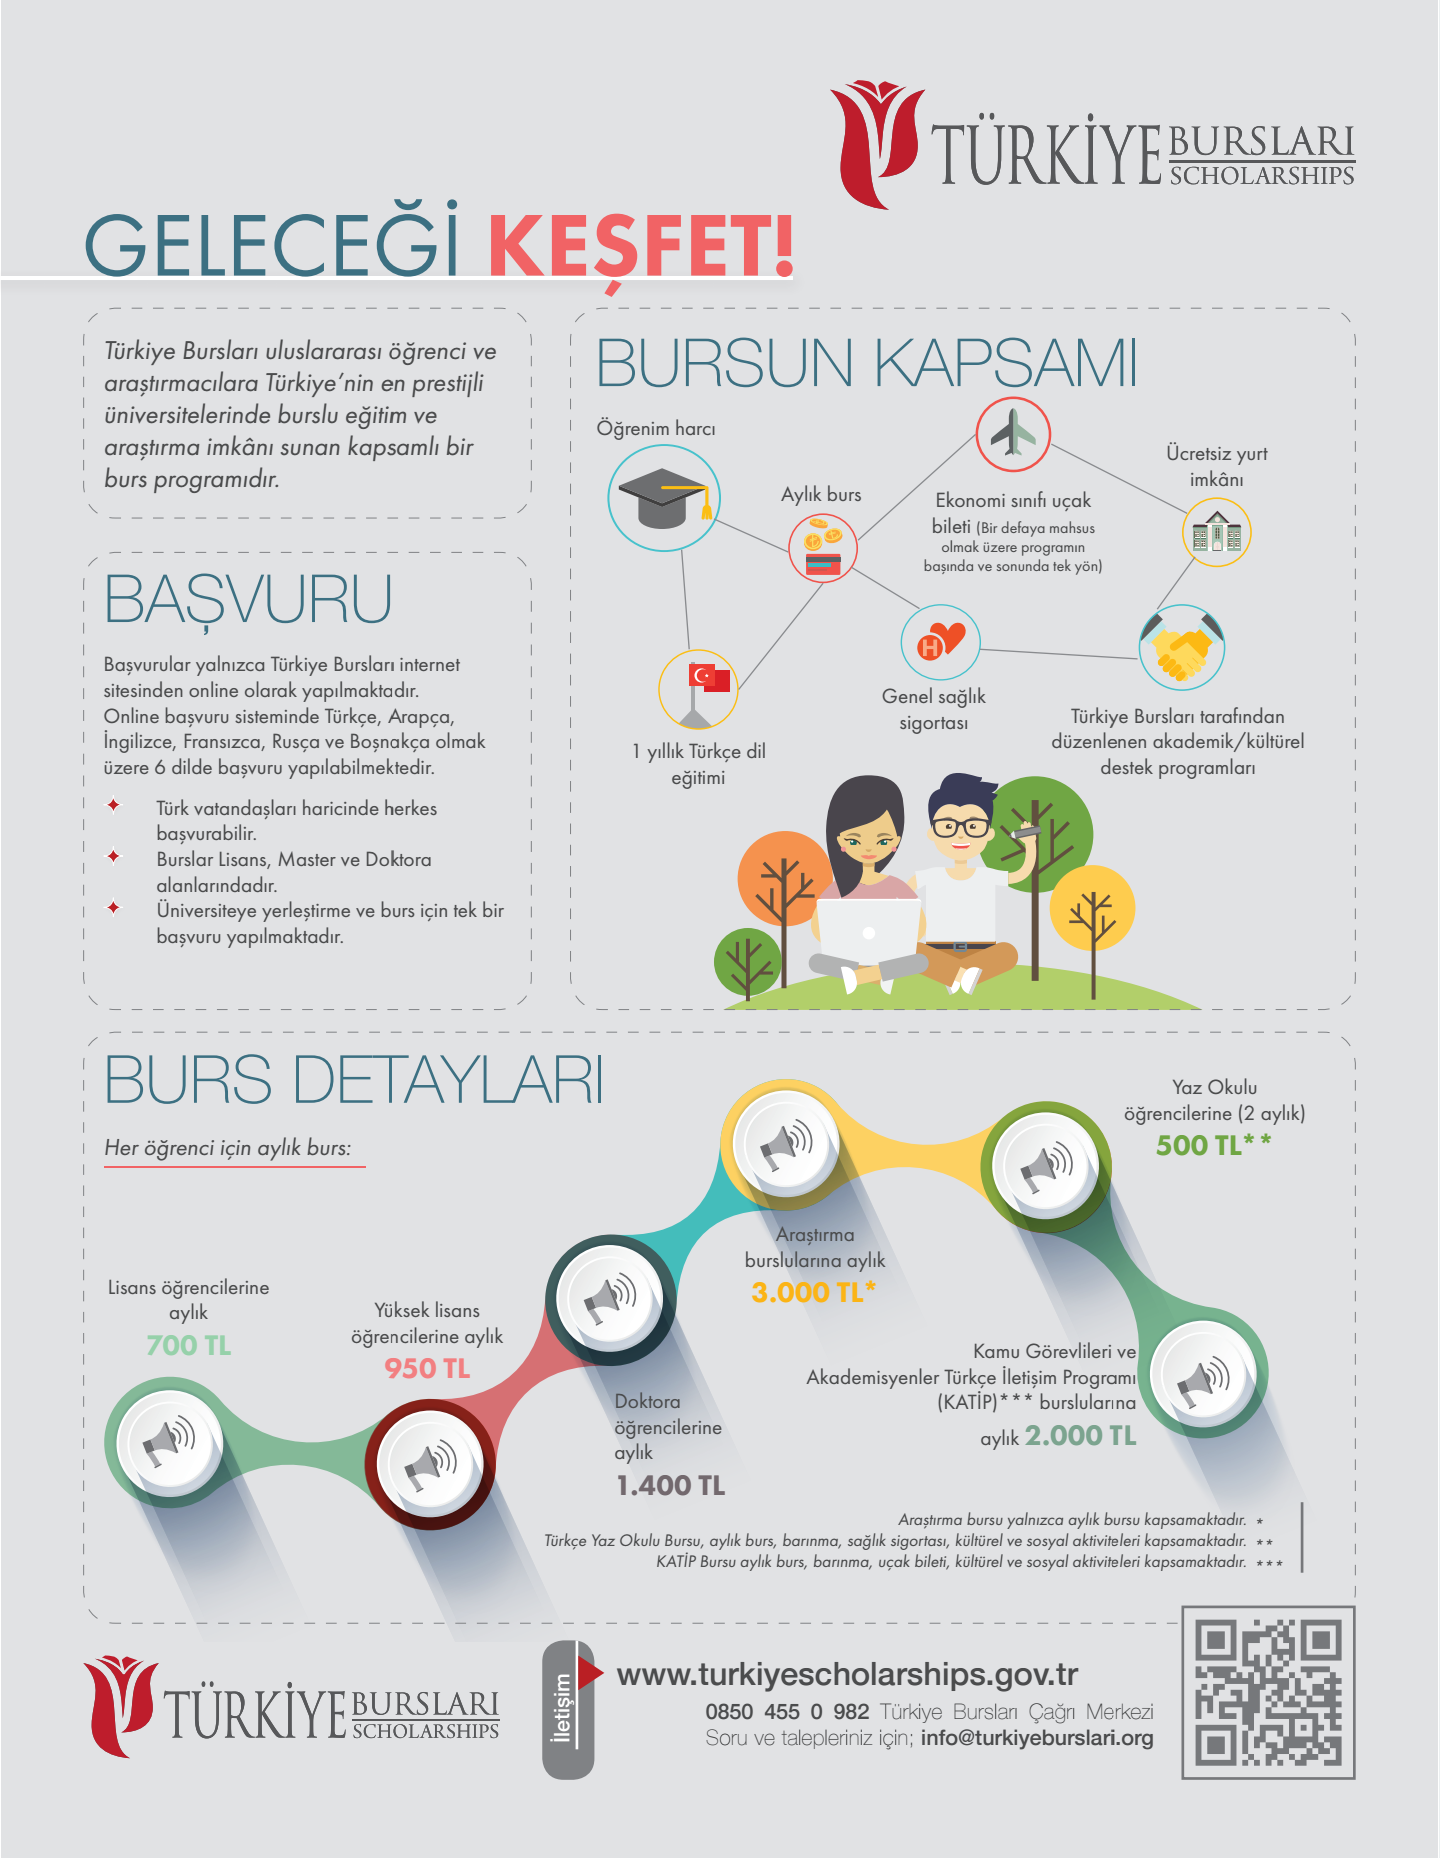 Türkiye'de lisans ve lisansüstü öğrenimi için burs başvuruları başlamıştır